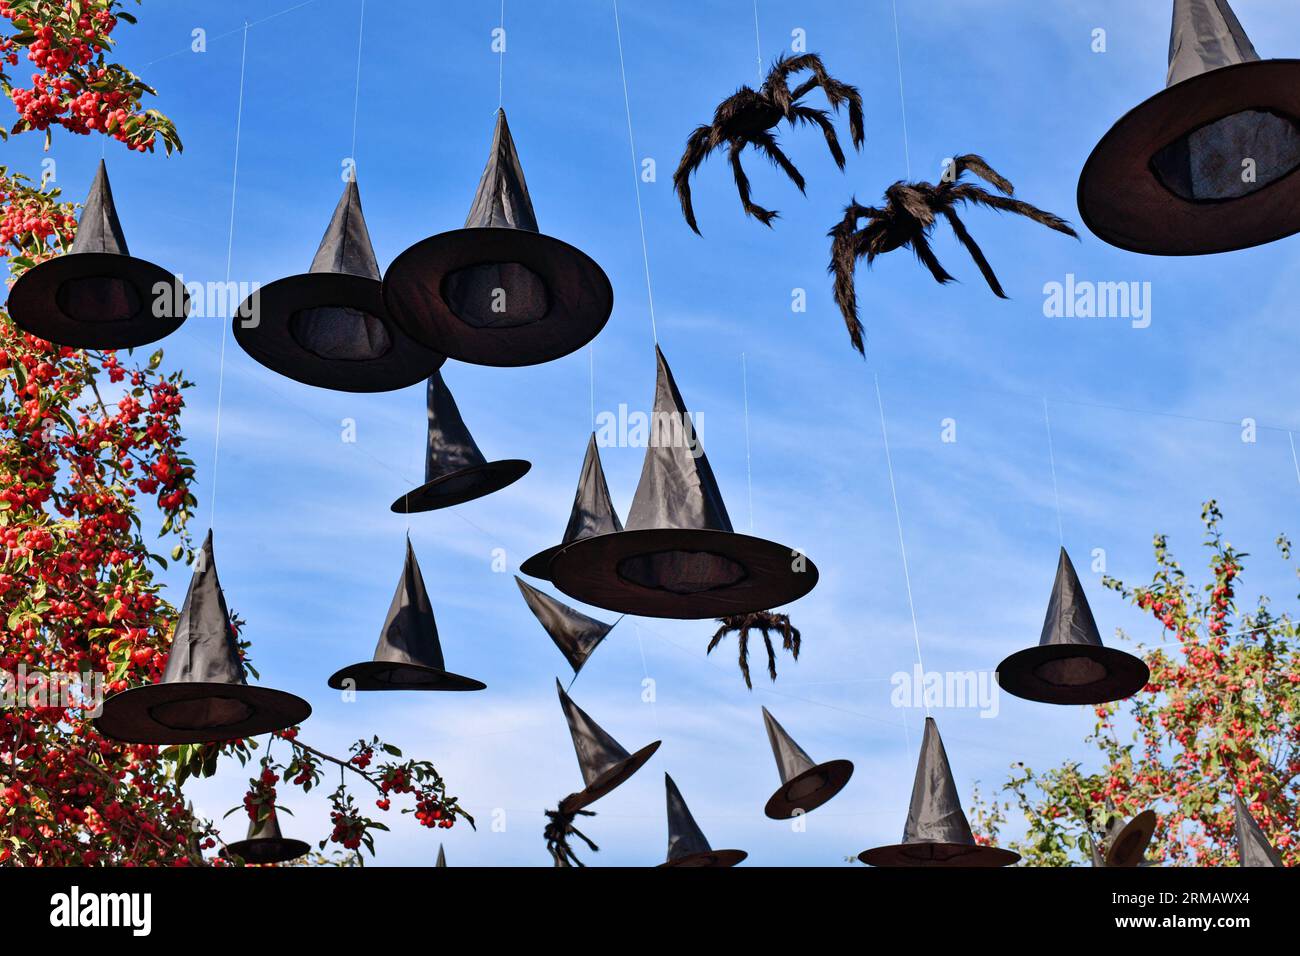 Halloween décoration chapeaux de sorcières et araignées suspendus dans le ciel Banque D'Images